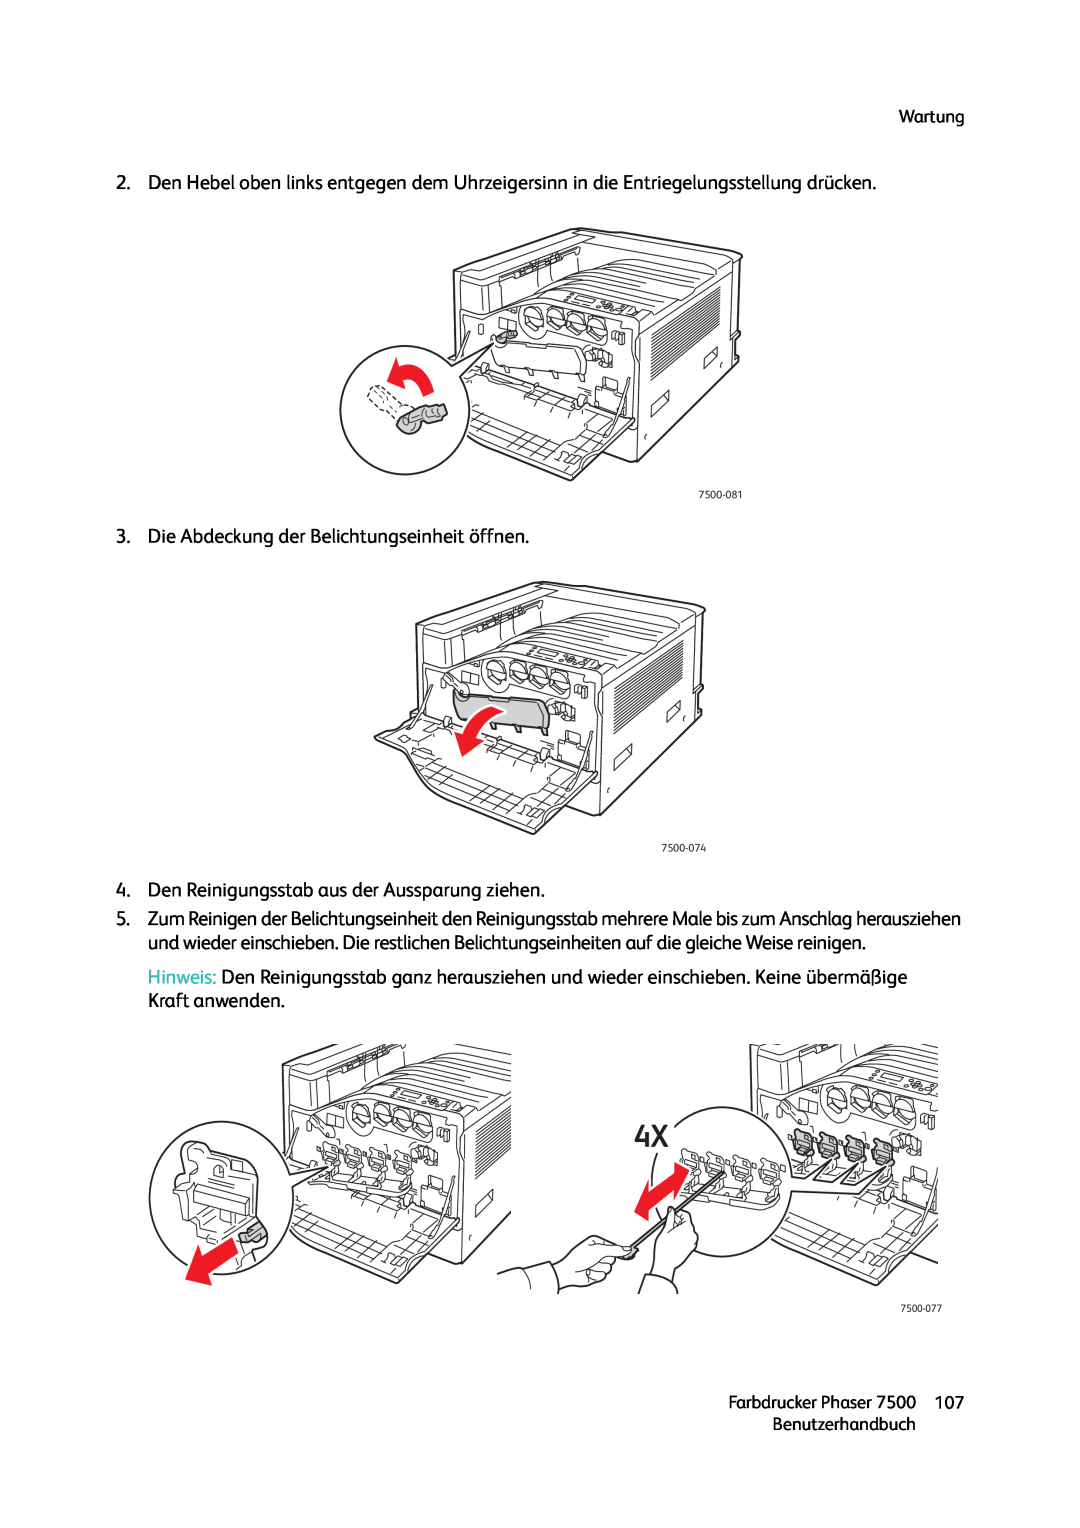 Xerox 7500 color printer manual Die Abdeckung der Belichtungseinheit öffnen 